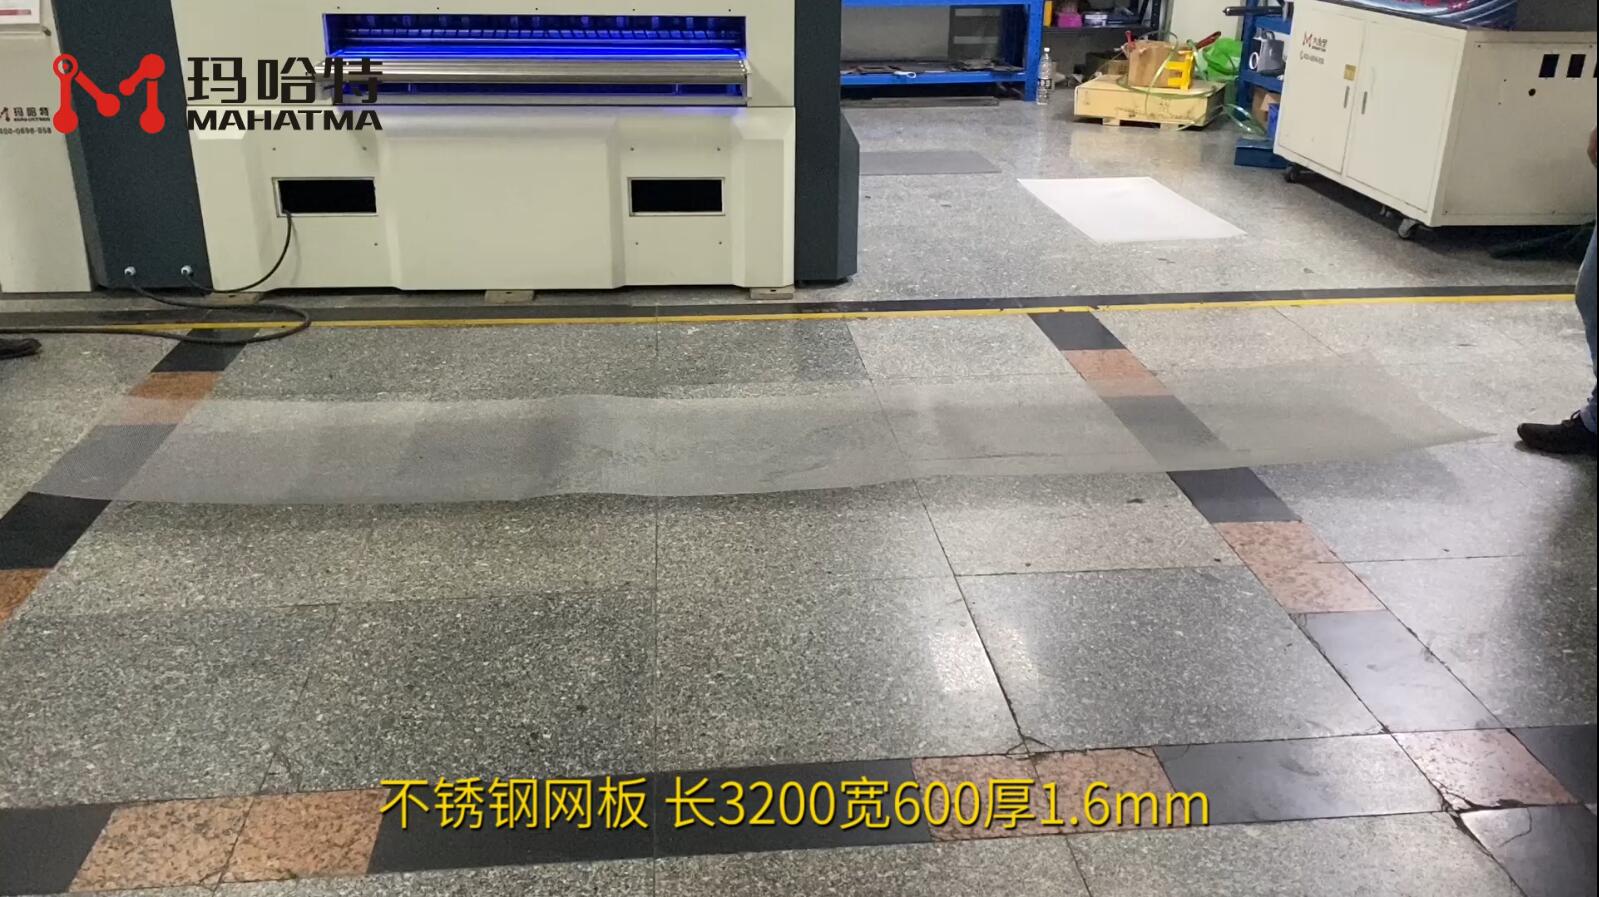 不锈钢网板 MHT30-1300 长方形 长3200宽600厚1.6mm